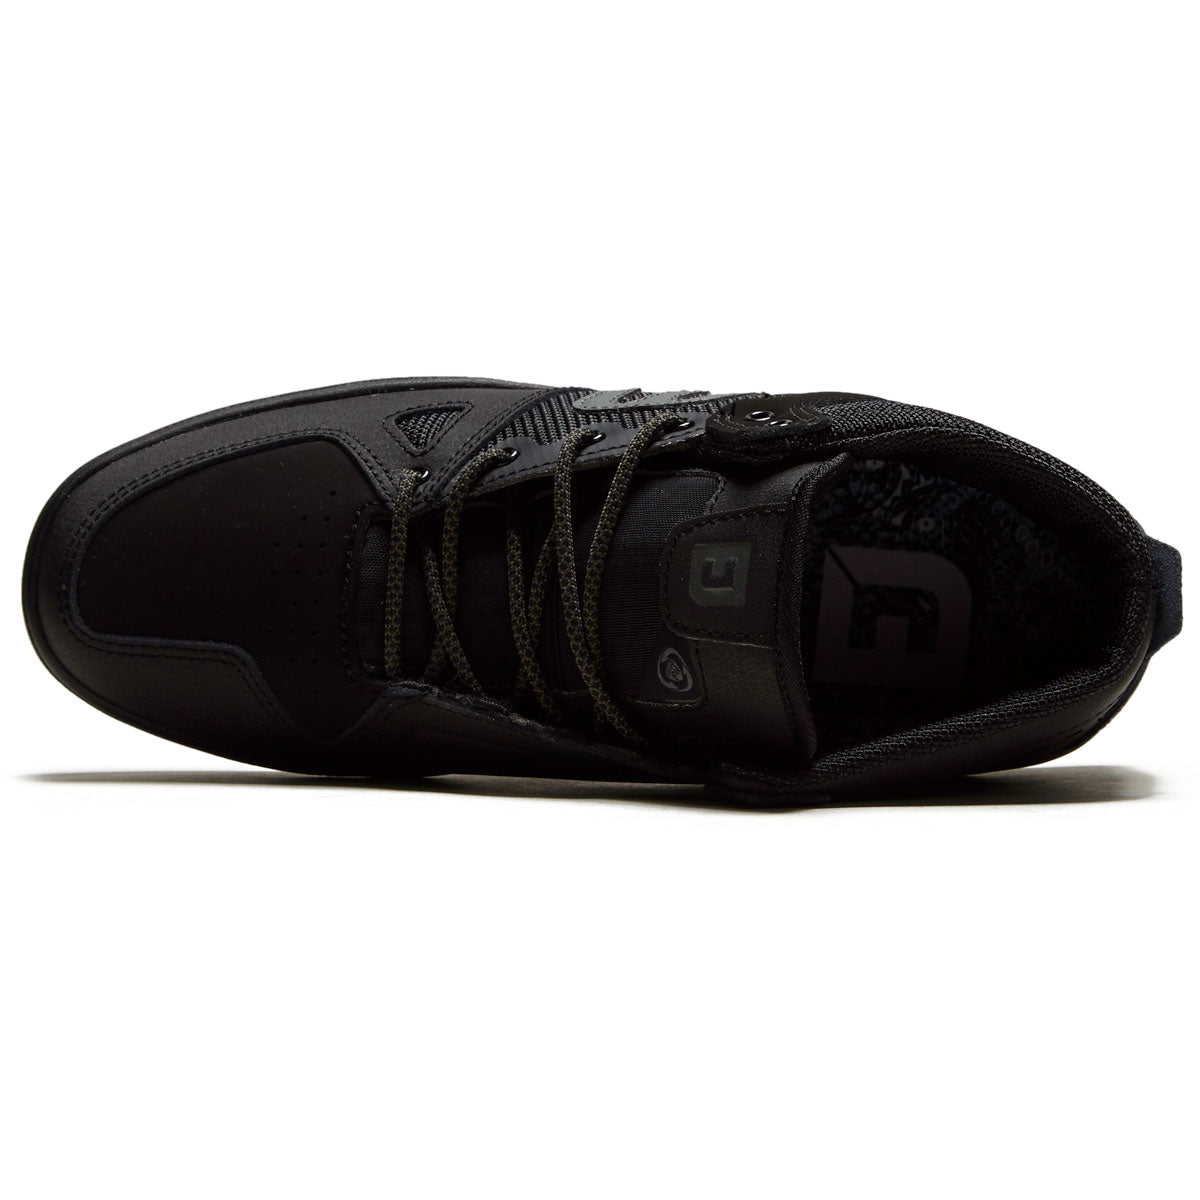 Etnies Johansson Pro Shoes - Black image 3